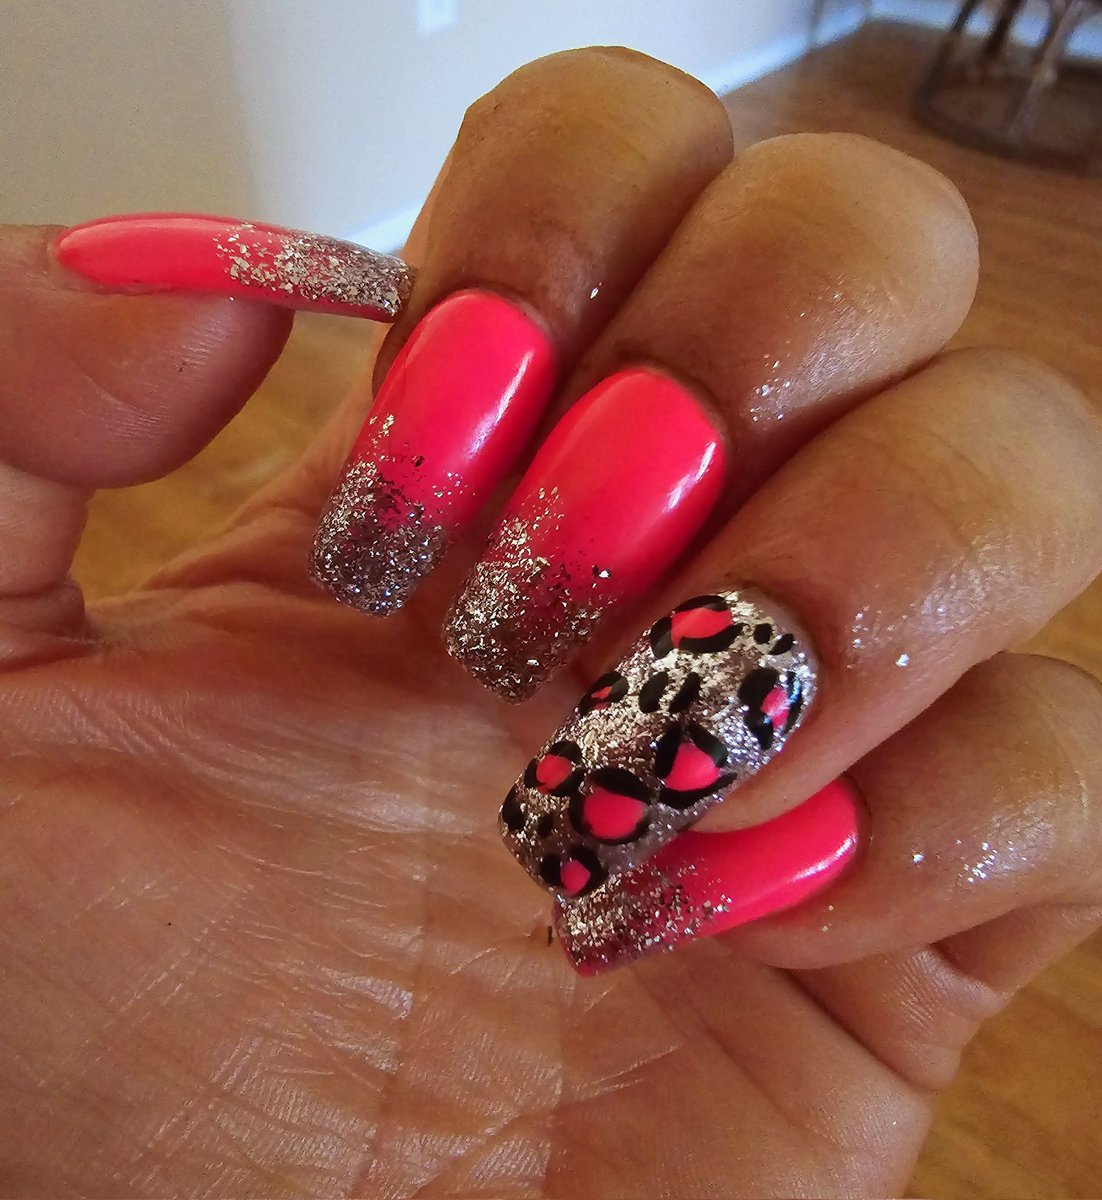 Summer nails 💅 💖

#pink #hotpink #nails #nailart #naildesign #naildesigns #nailart #nailpolish #SummerVibes